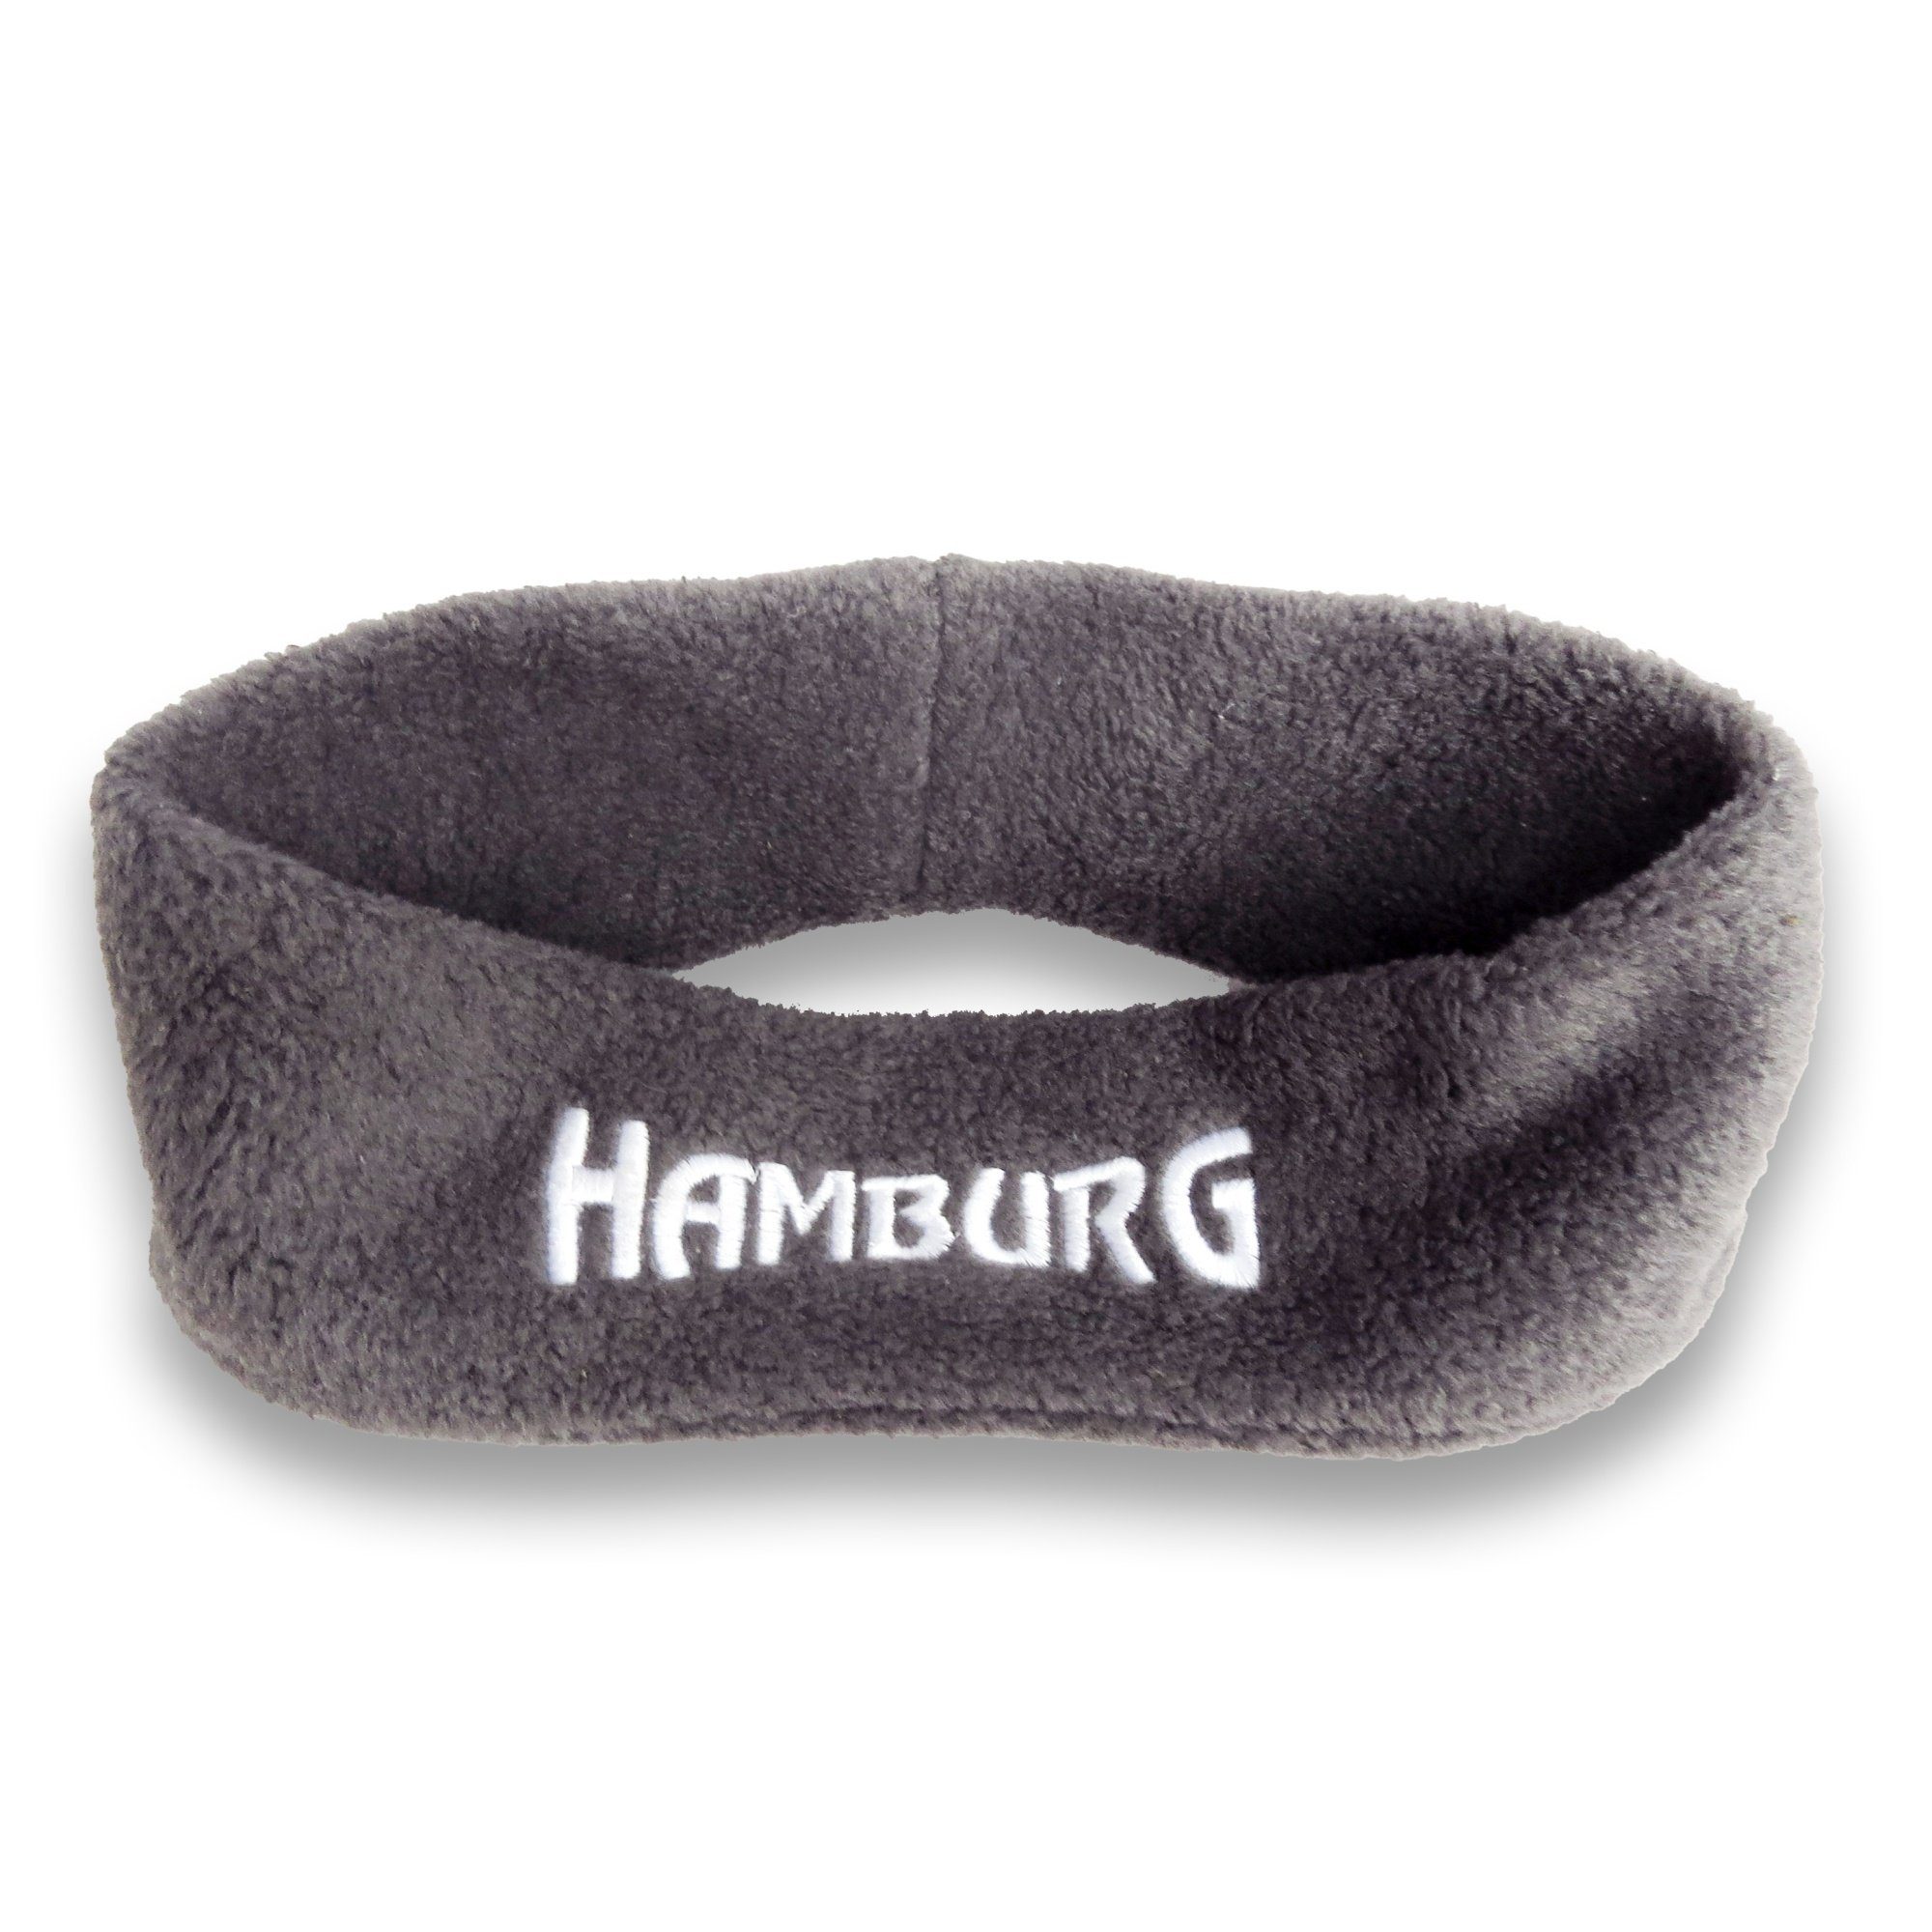 Sonia Originelli Stirnband Stirnband "Hamburg" Fleece kuschelig weich bestickt Marine, Rot grau